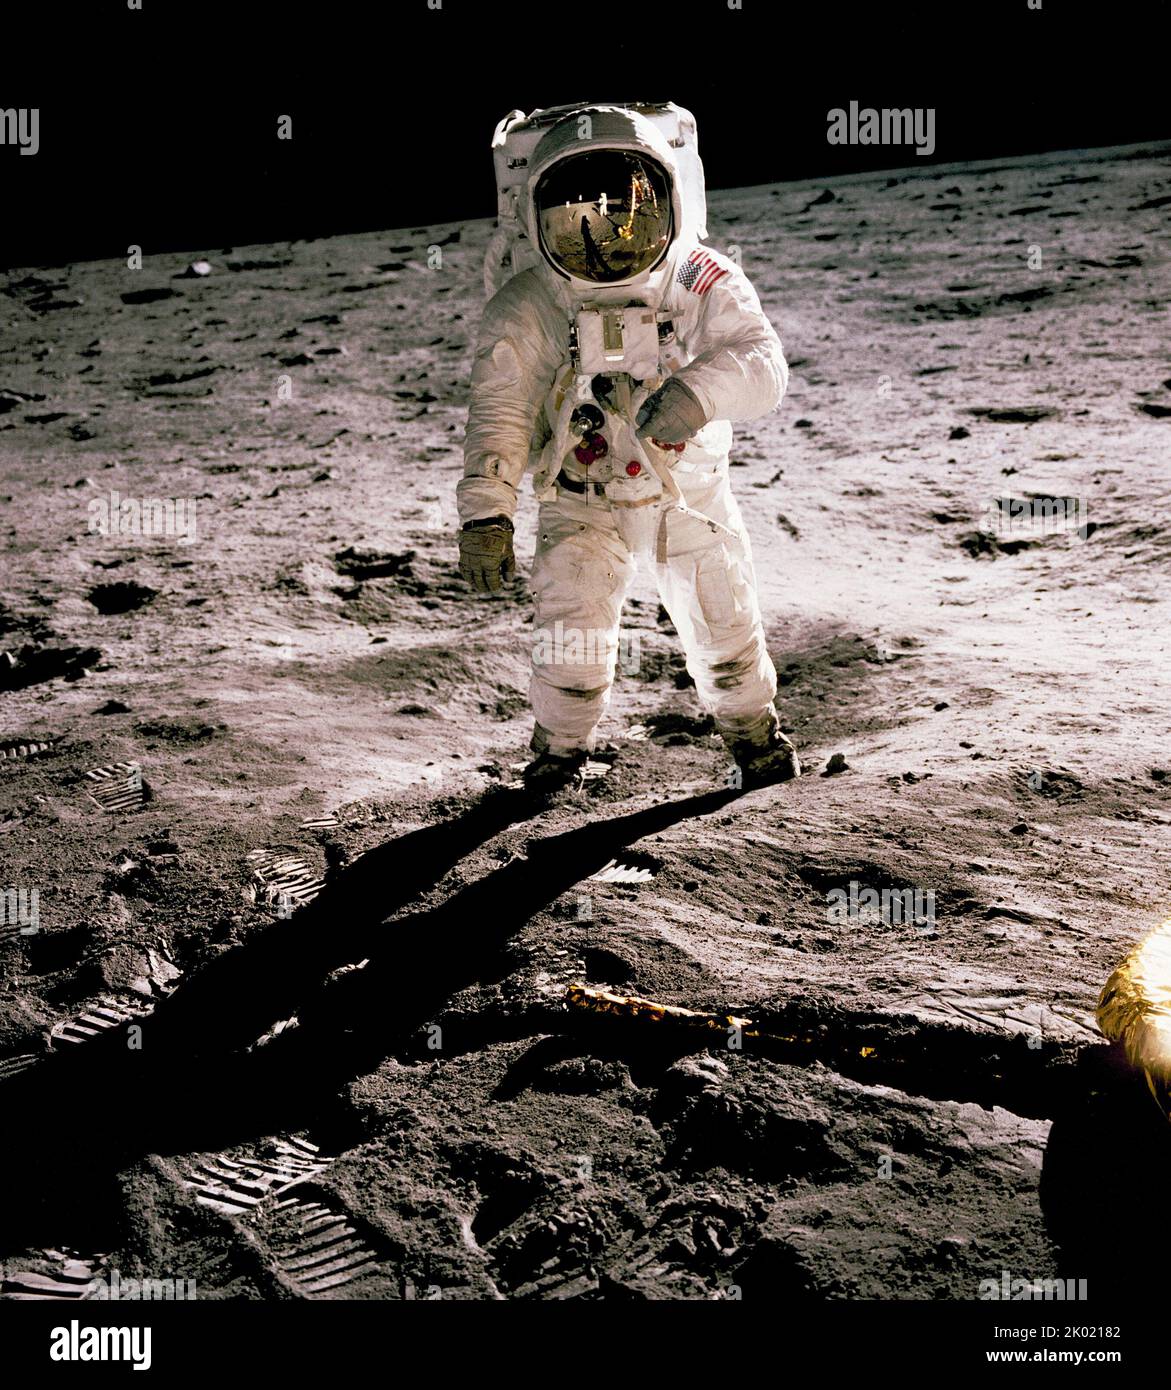 Edwin Aldrin marche sur la surface lunaire. Neil Armstrong, qui a pris la photo, se retrouve dans la visière du casque d'Aldrin Banque D'Images